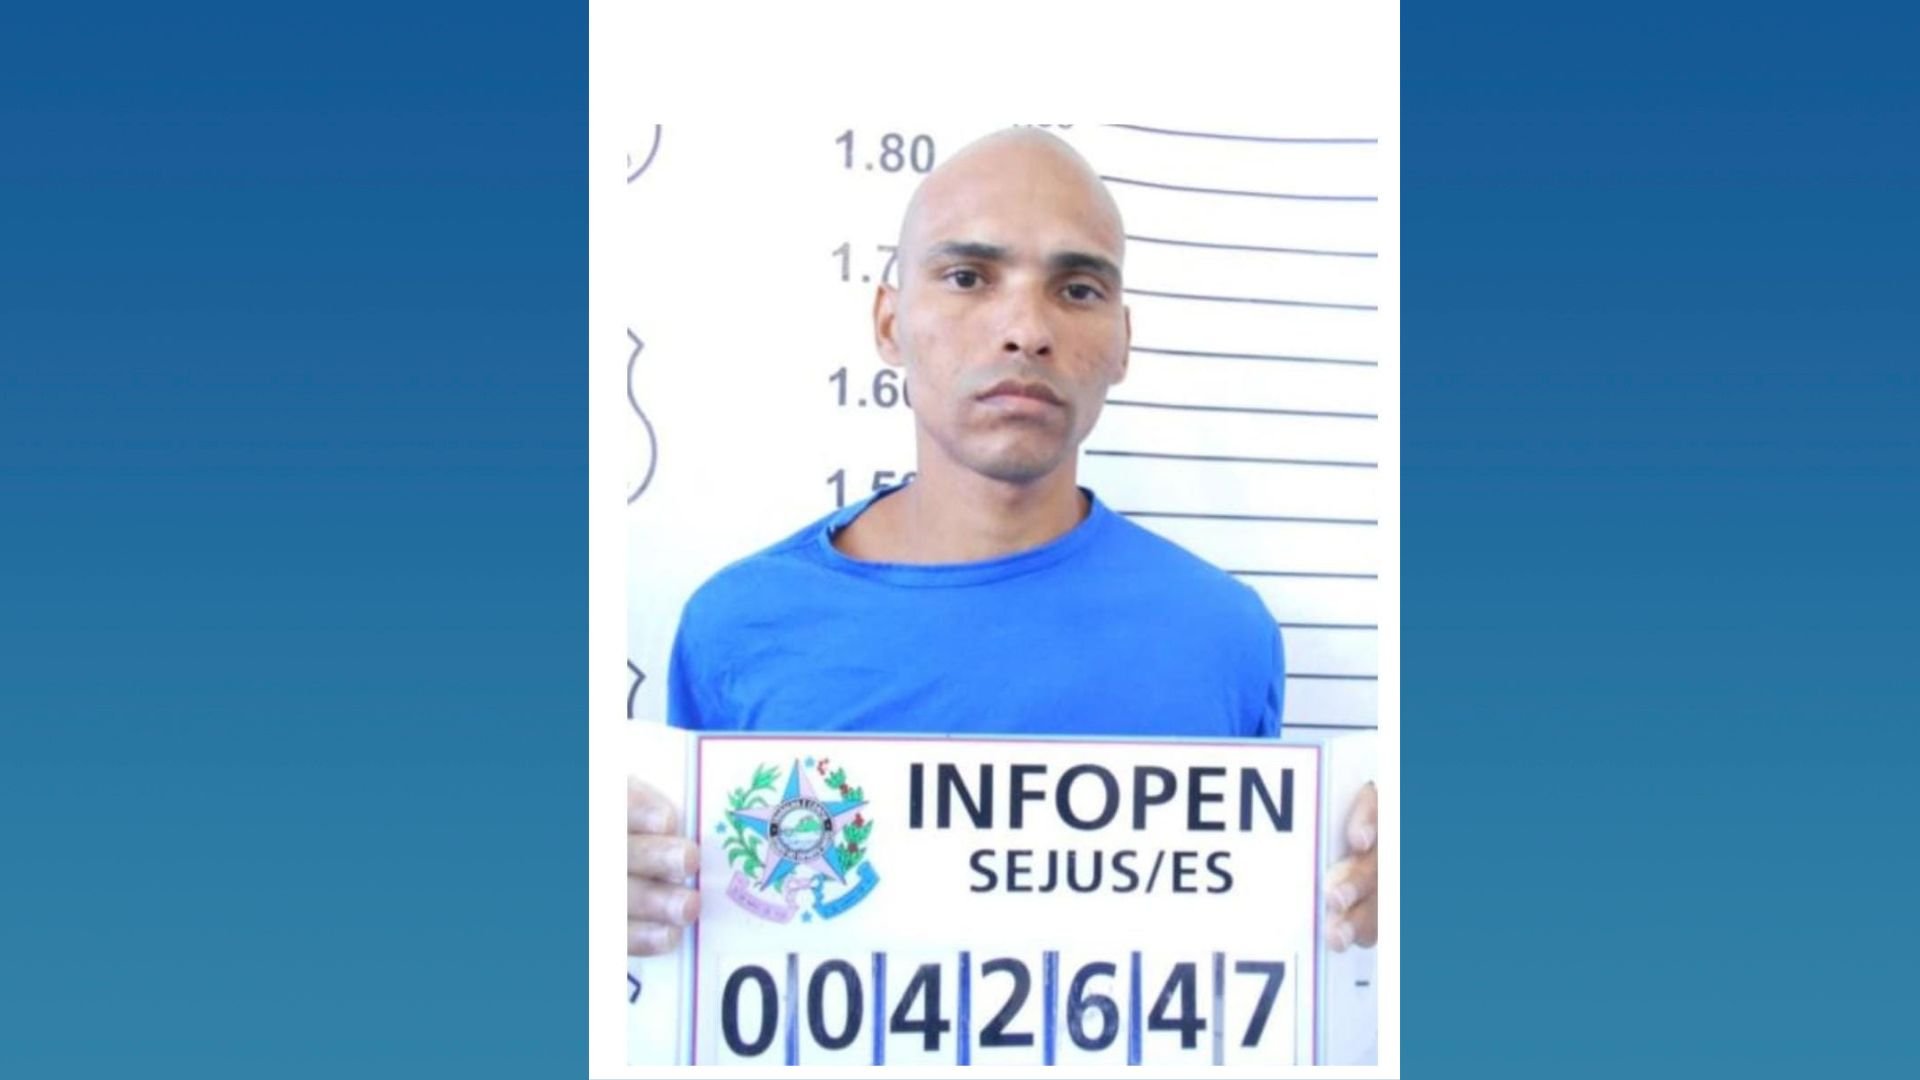 Caso foi registrado como tentativa de latrocínio. Alessandro Pereira Andrade, de 33 anos, tem mandados de prisão em aberto